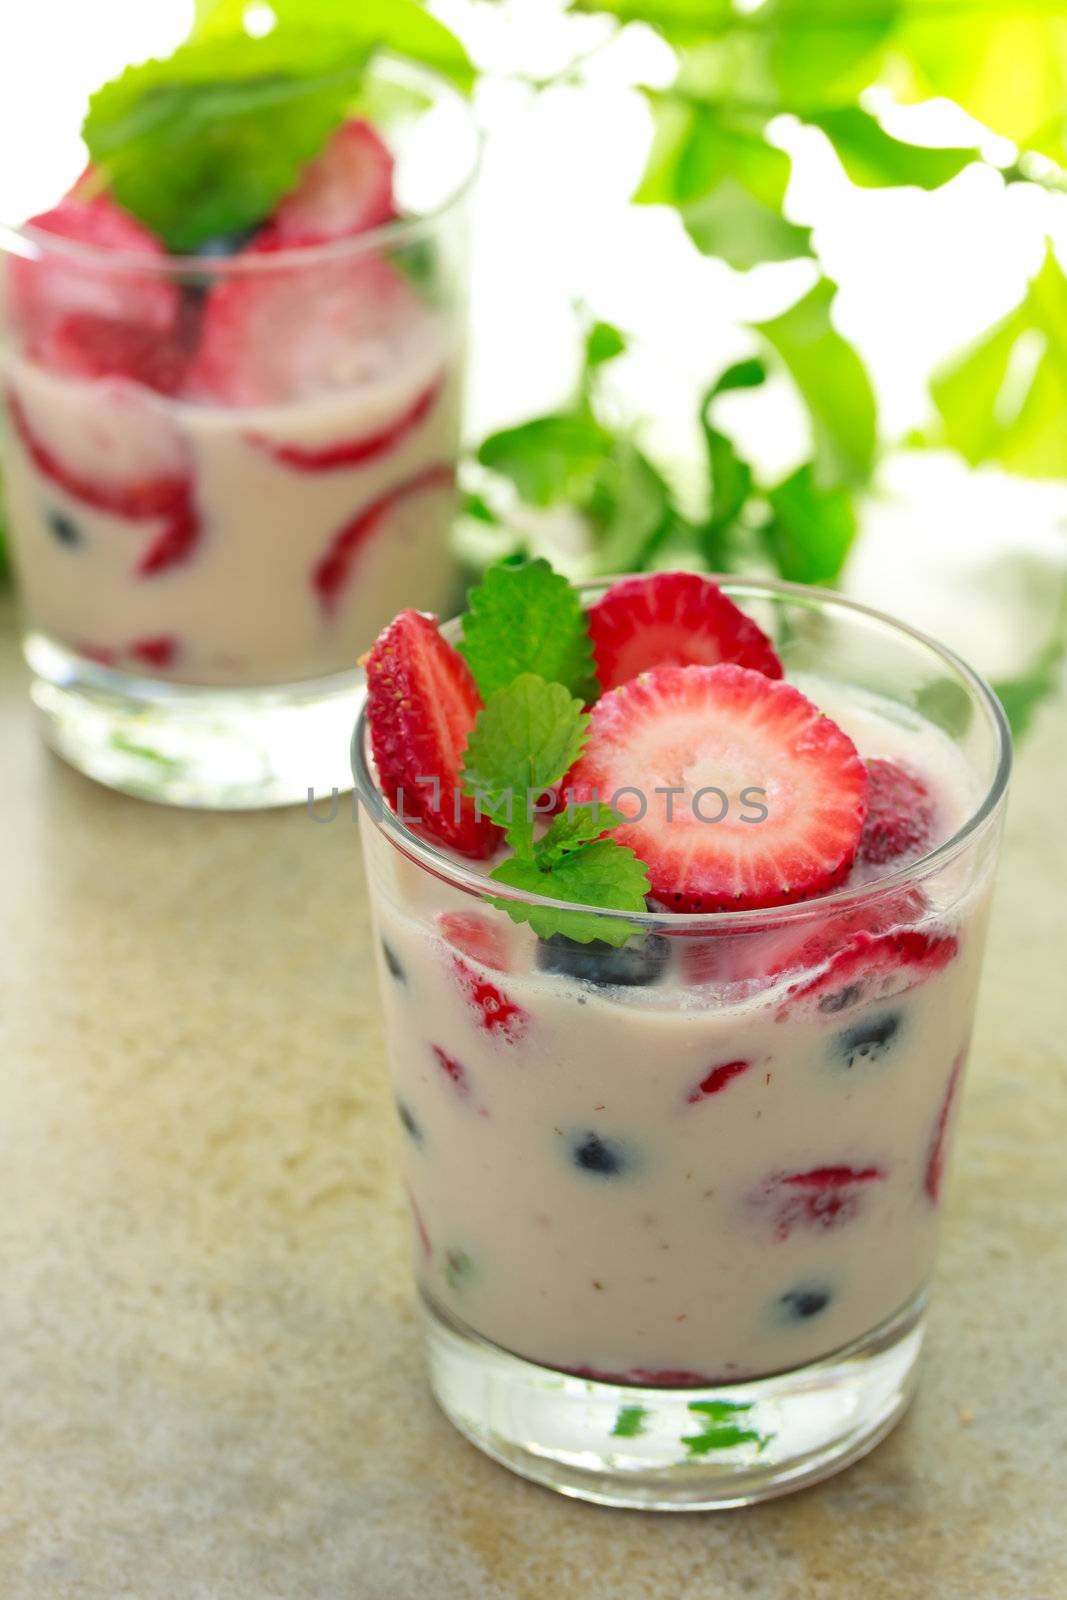 Vanilla yogurt with strawberries, blueberries and lemon balm